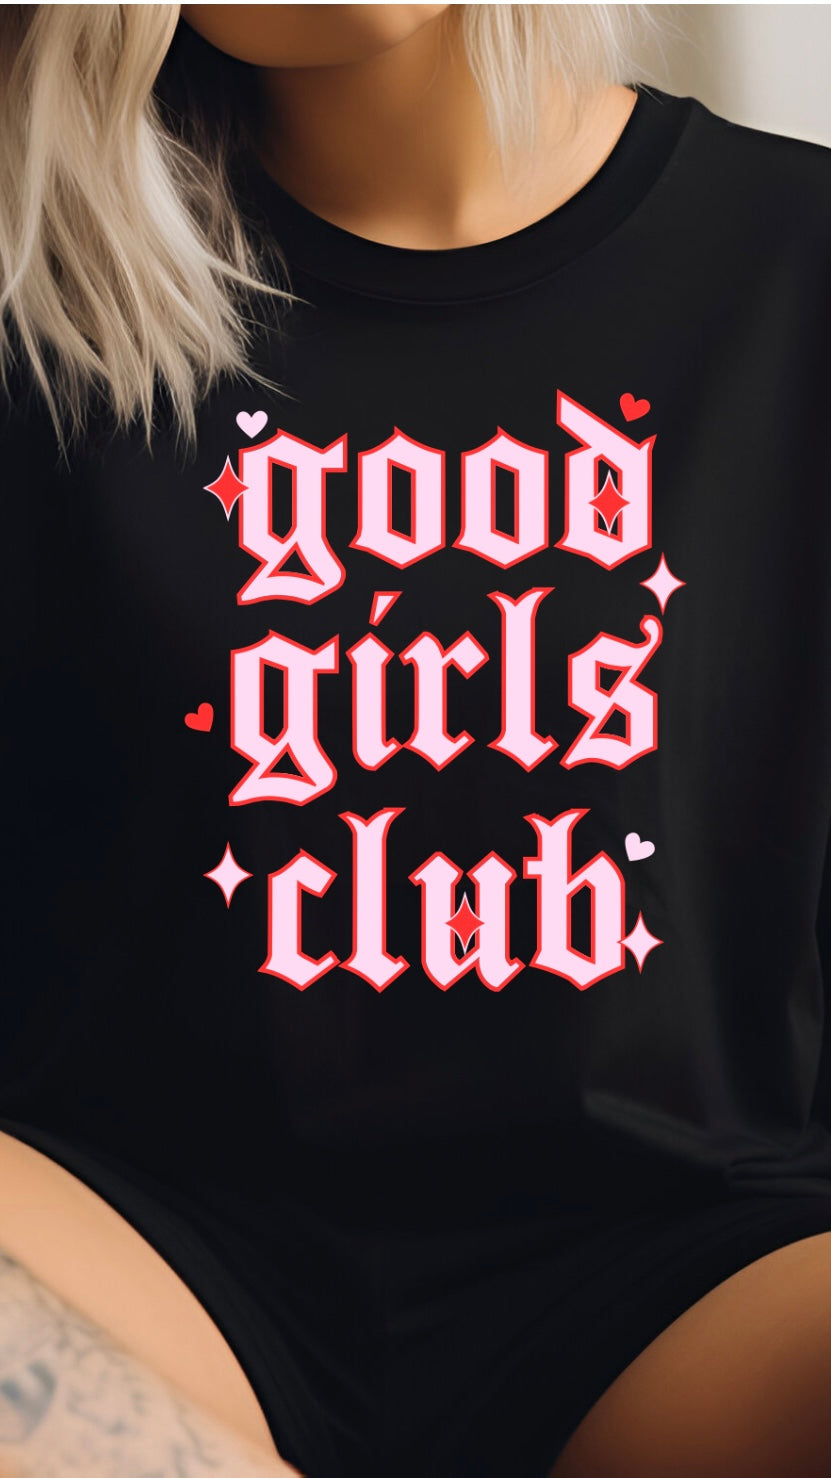 Good girls club